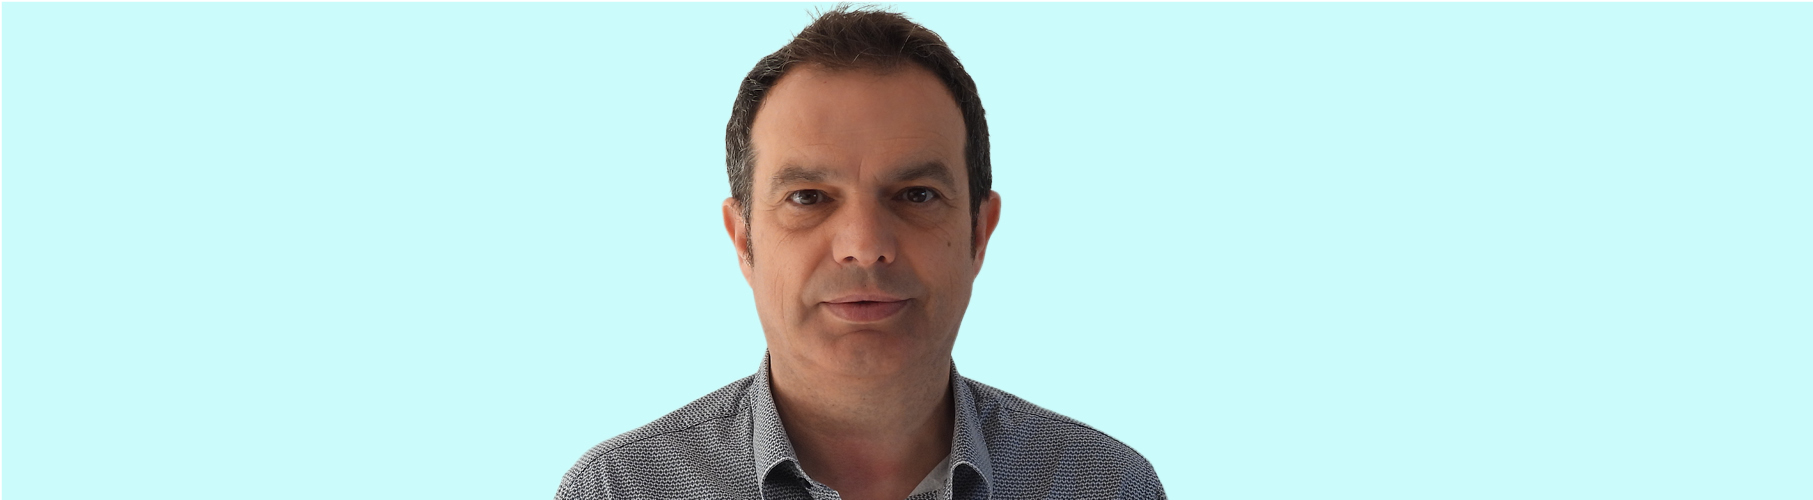 José Antonio Bonet, nou director d’Agrotecnio